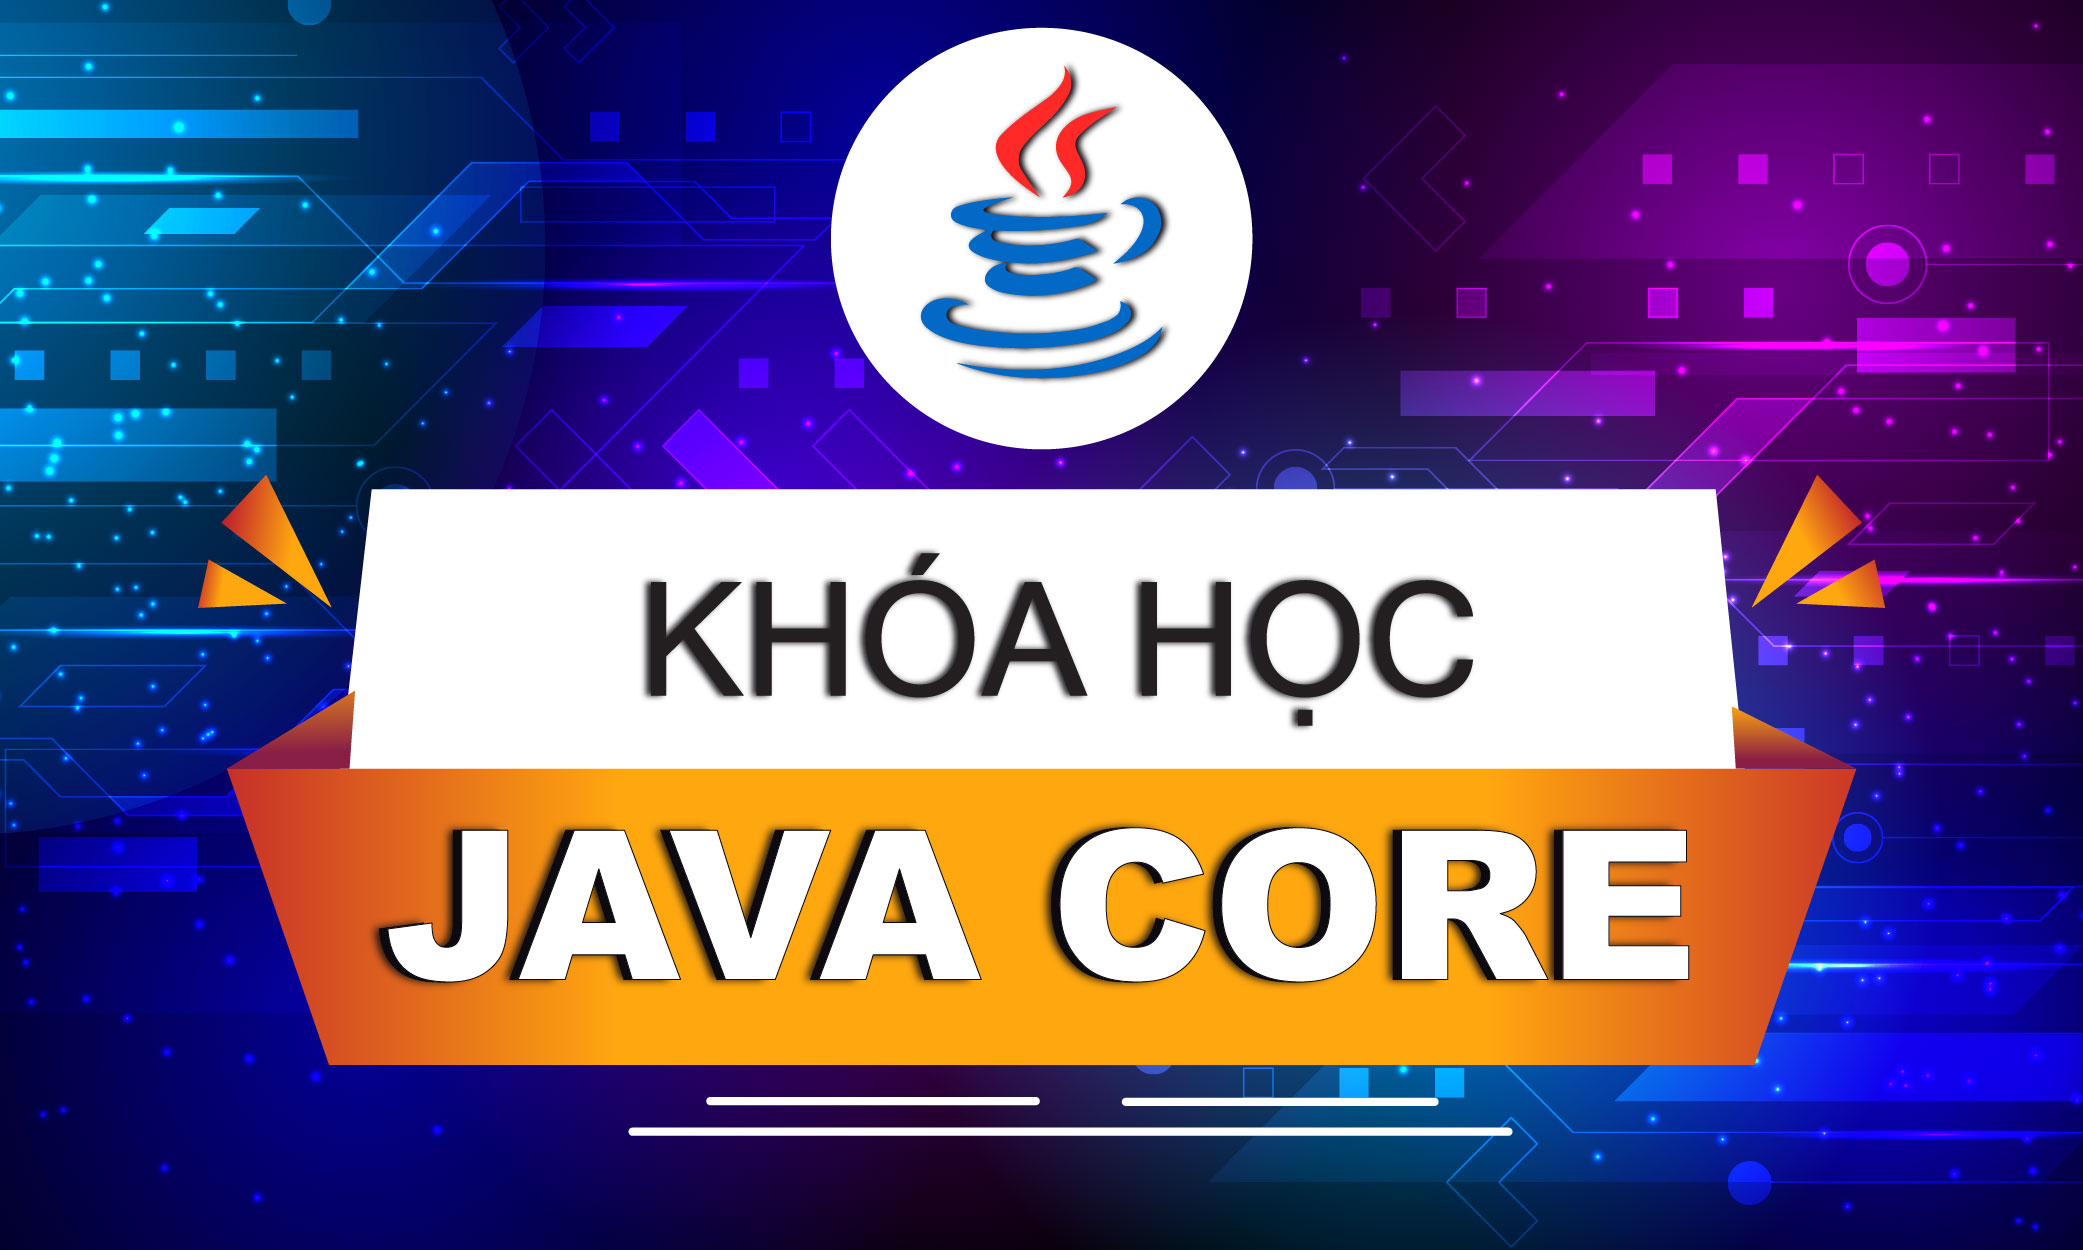 Khóa học Java core online chuyên sâu trực tiếp